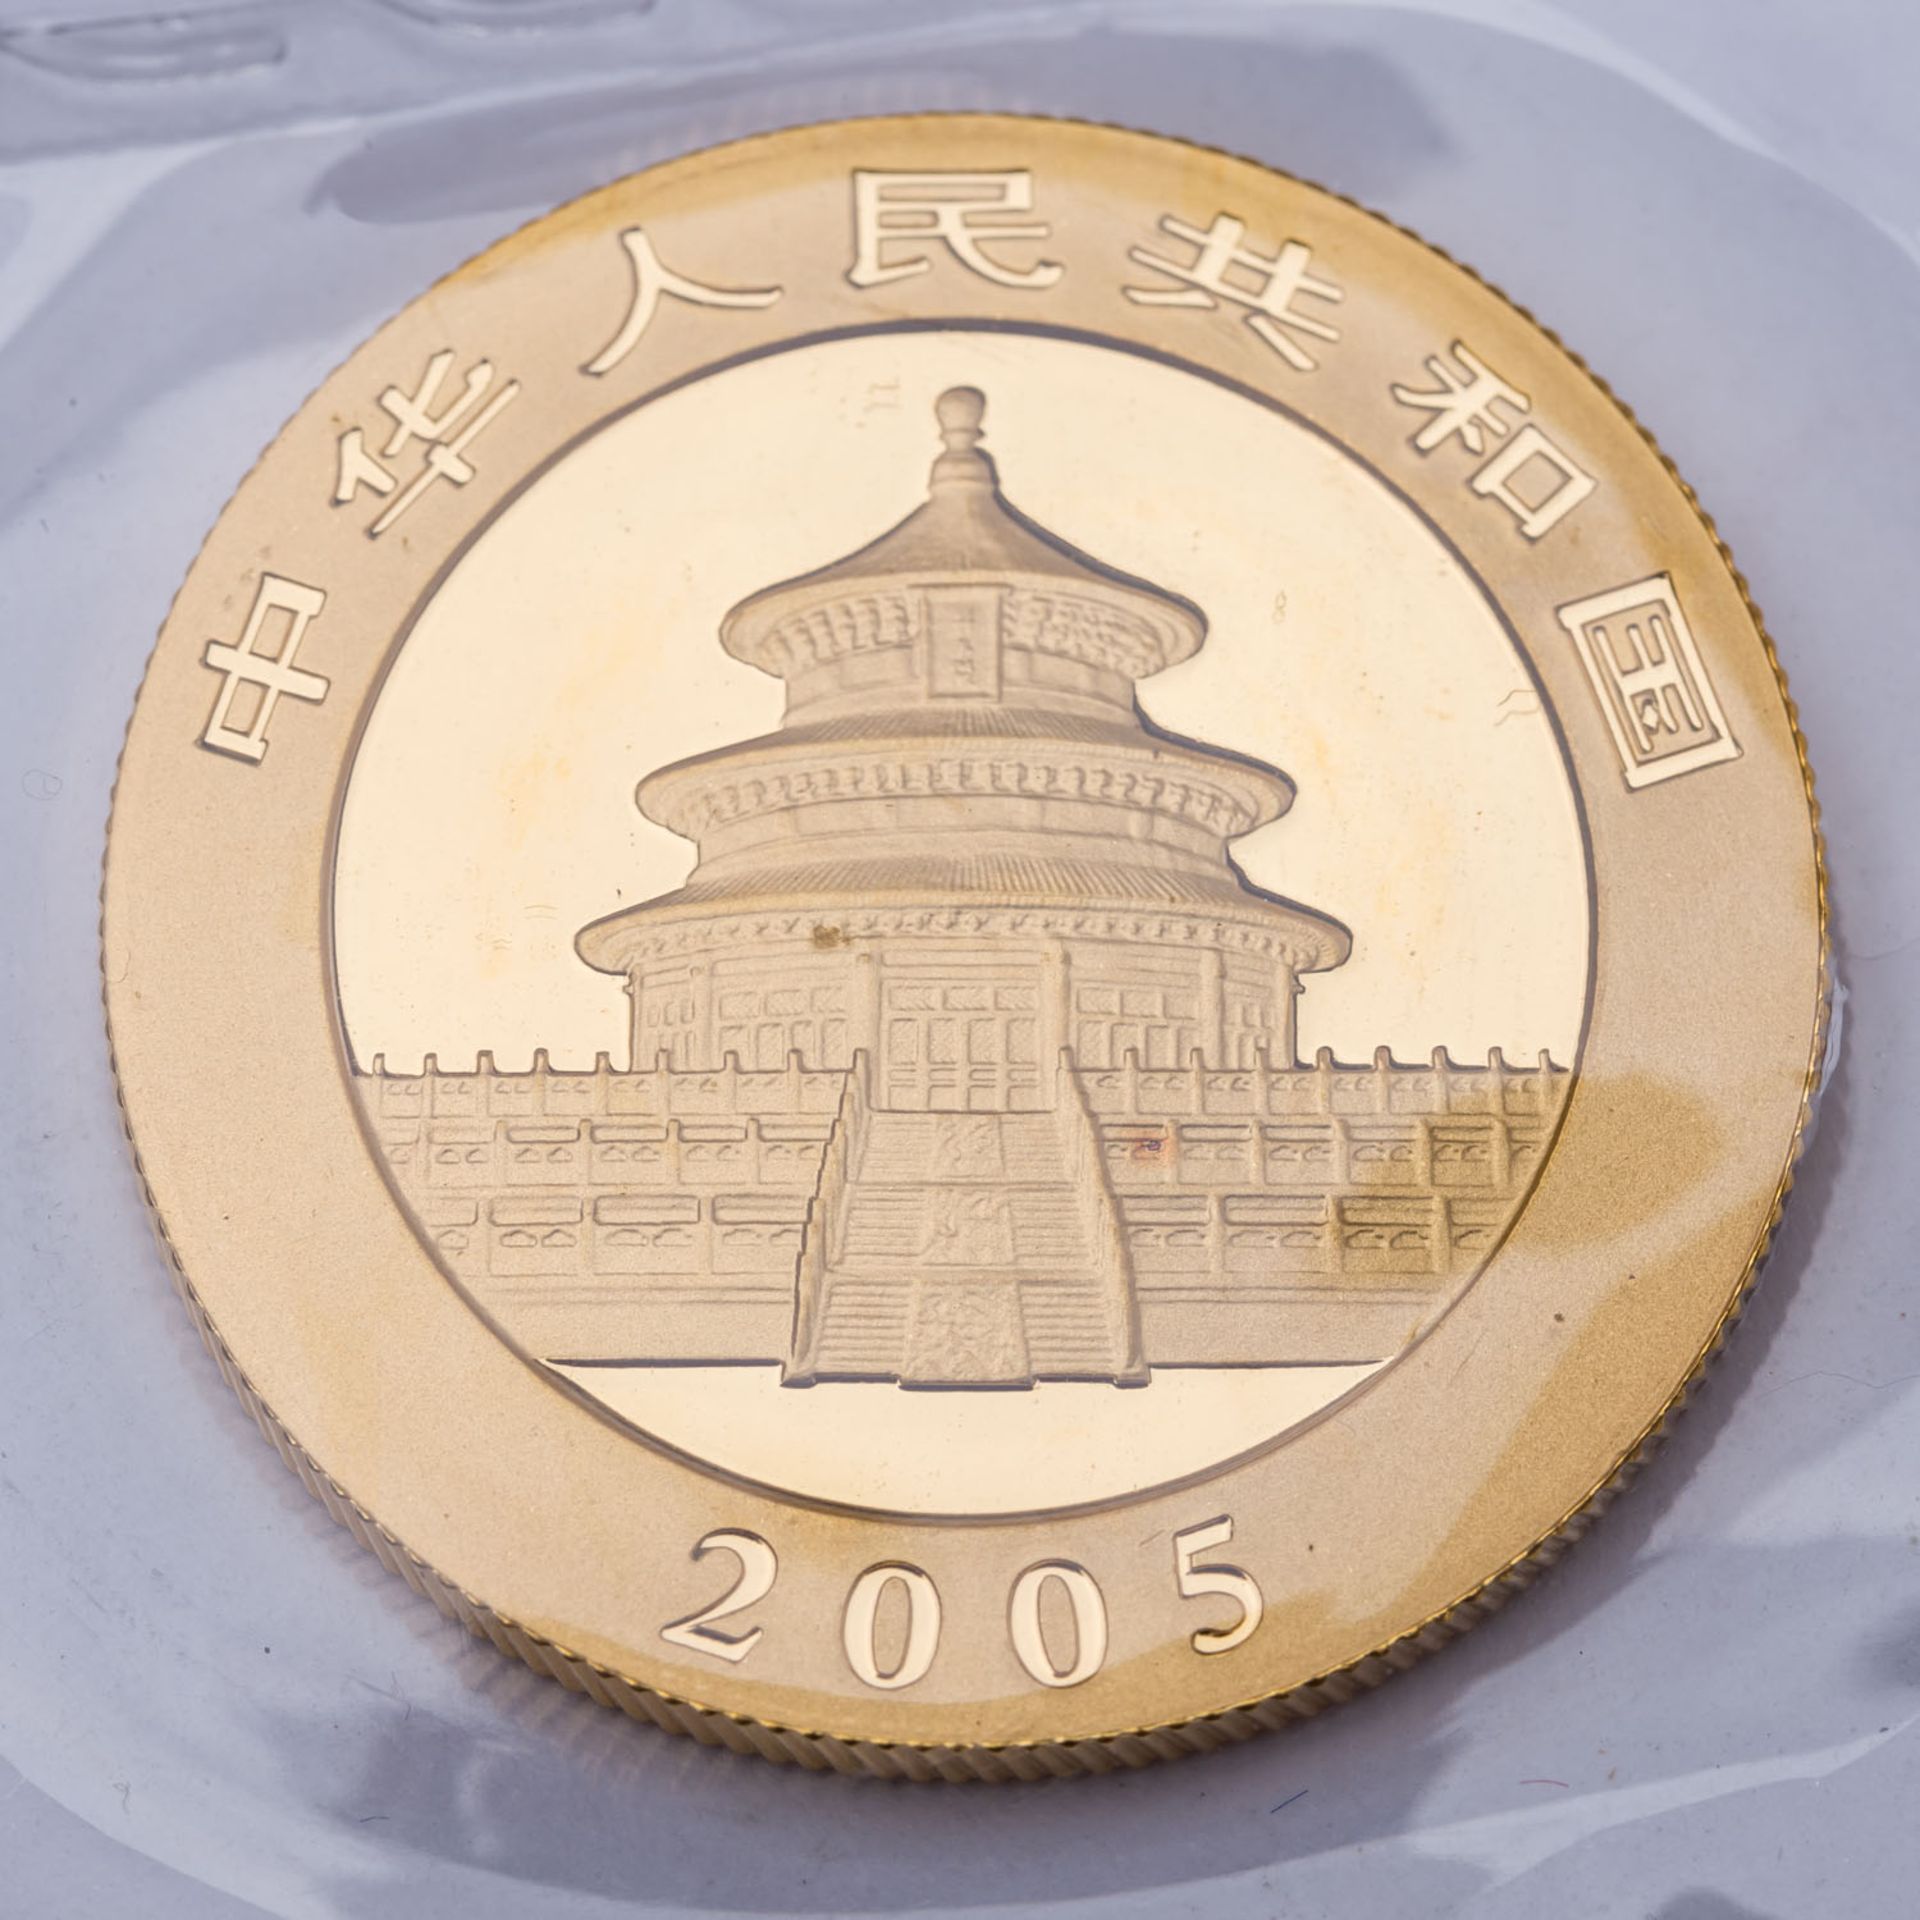 VR China - 200 Yuan 2005, Panda, GOLD, - Image 2 of 2